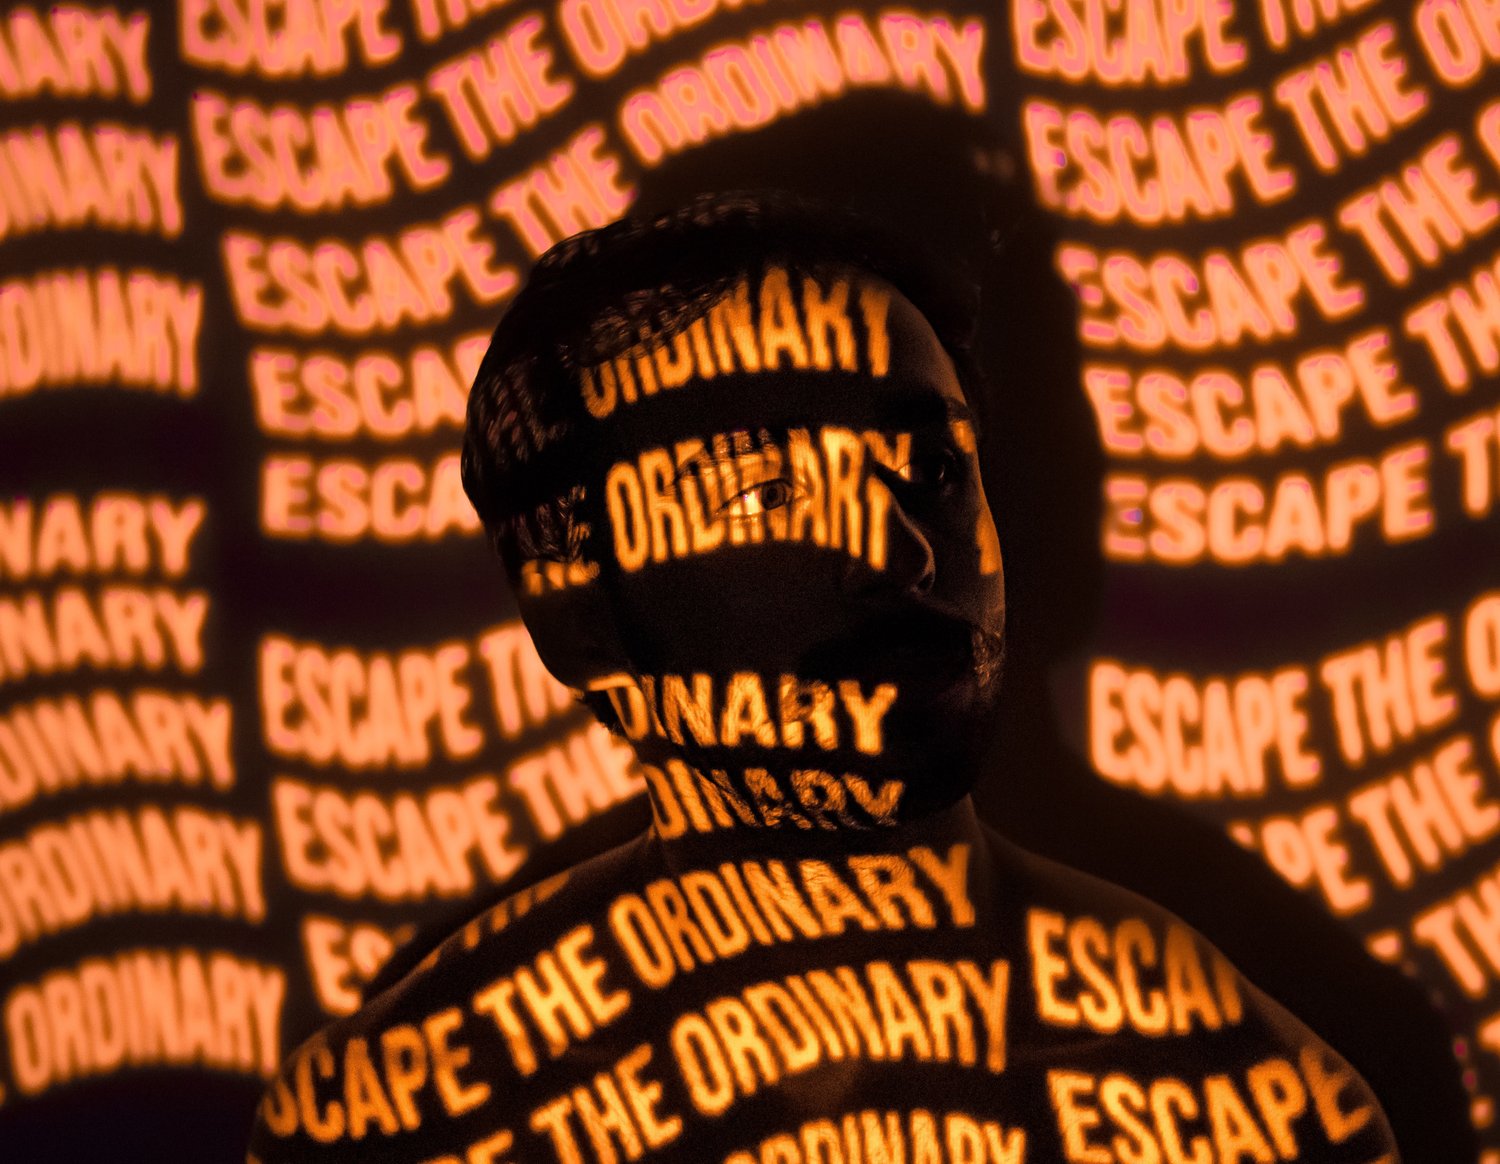 Escape the Ordinary.